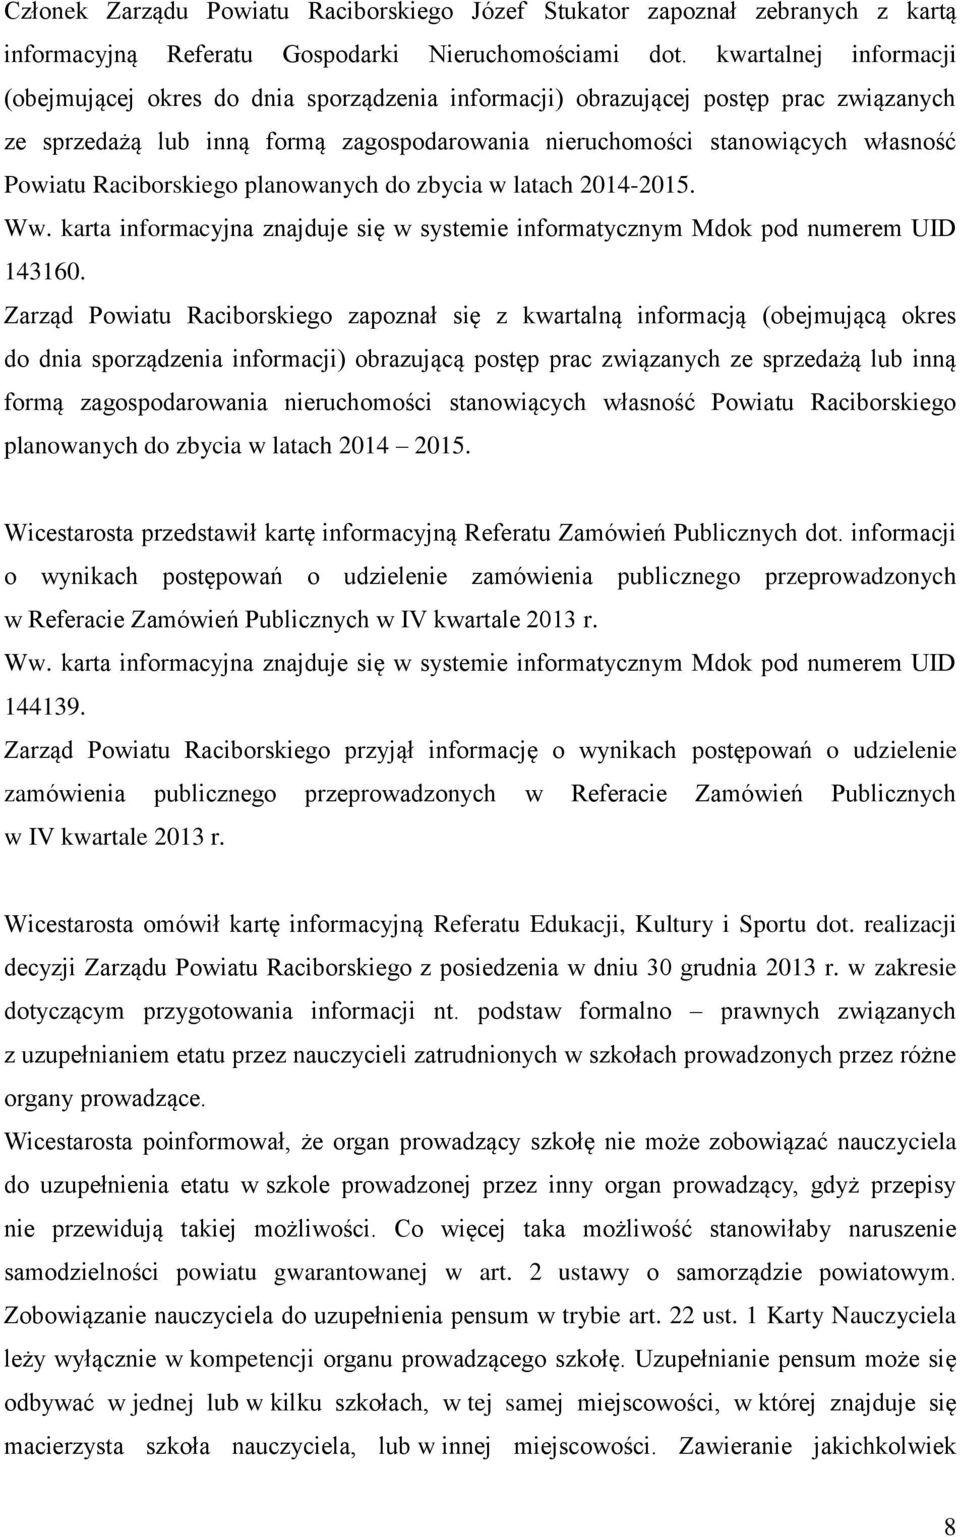 Raciborskiego planowanych do zbycia w latach 2014-2015. 143160.